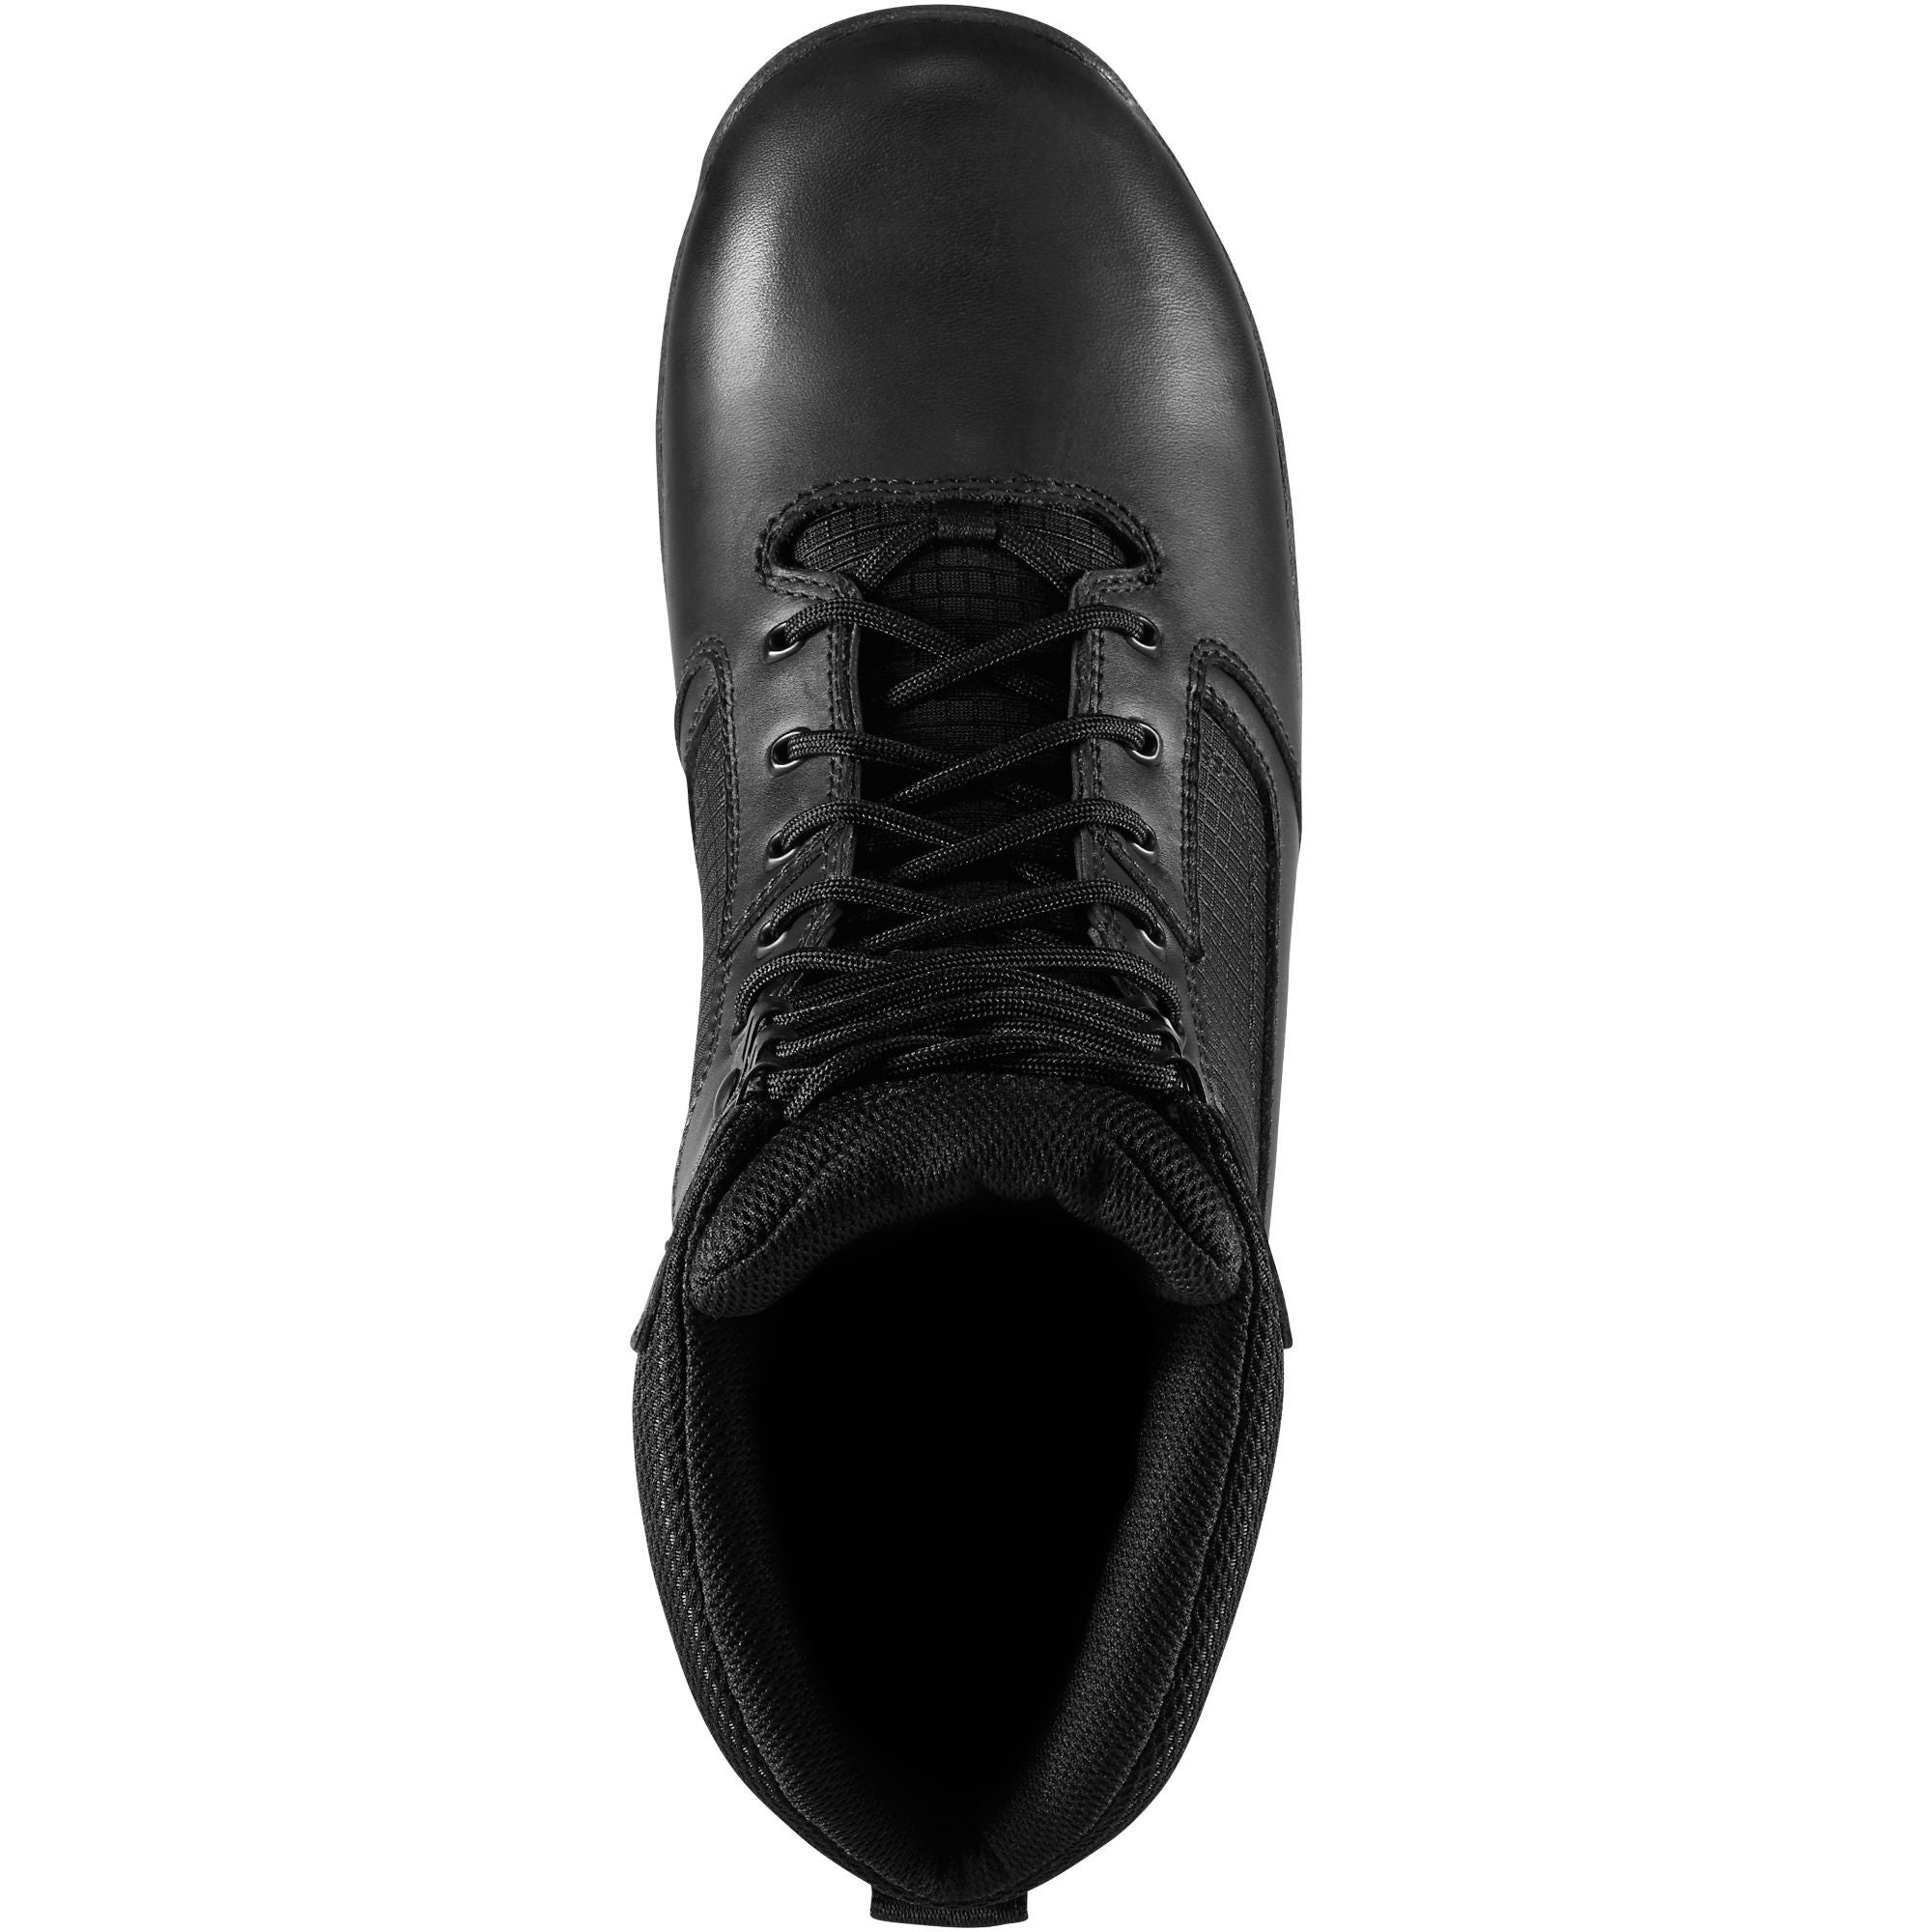 Danner Men's Lookout 8" Insulated Waterproof Duty Boot - Black - 23827  - Overlook Boots